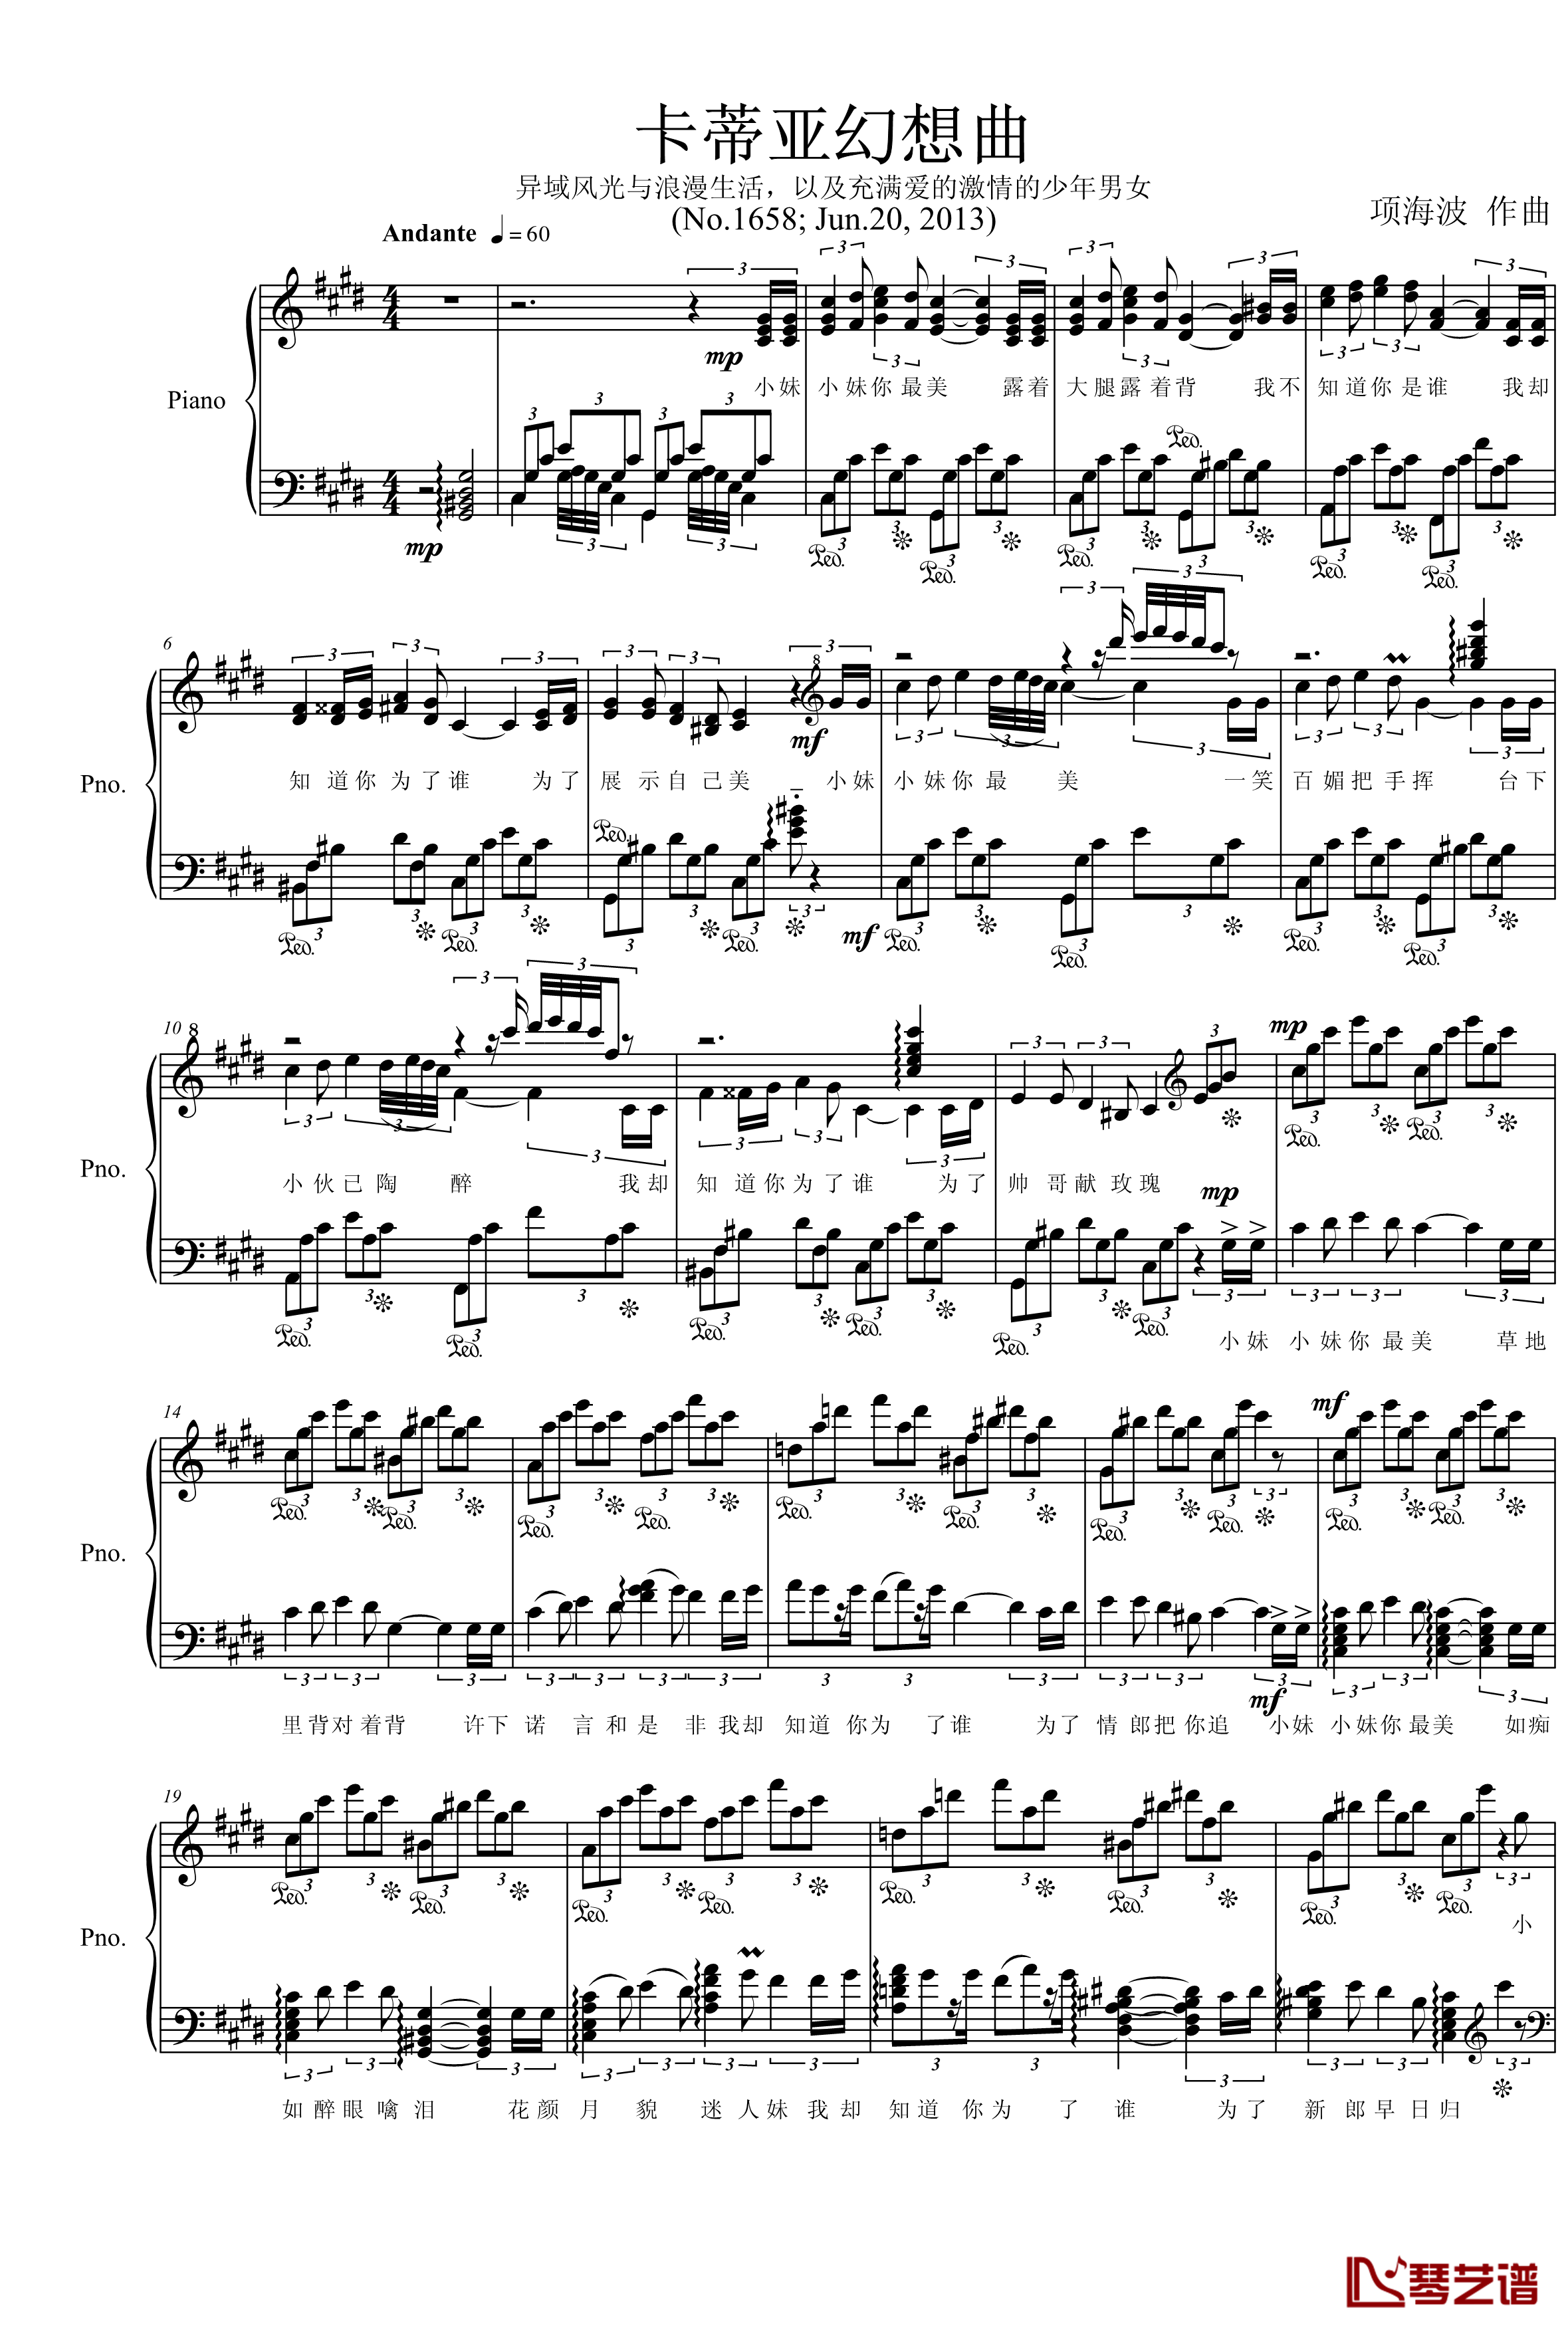 卡蒂亚幻想曲钢琴谱-项海波1